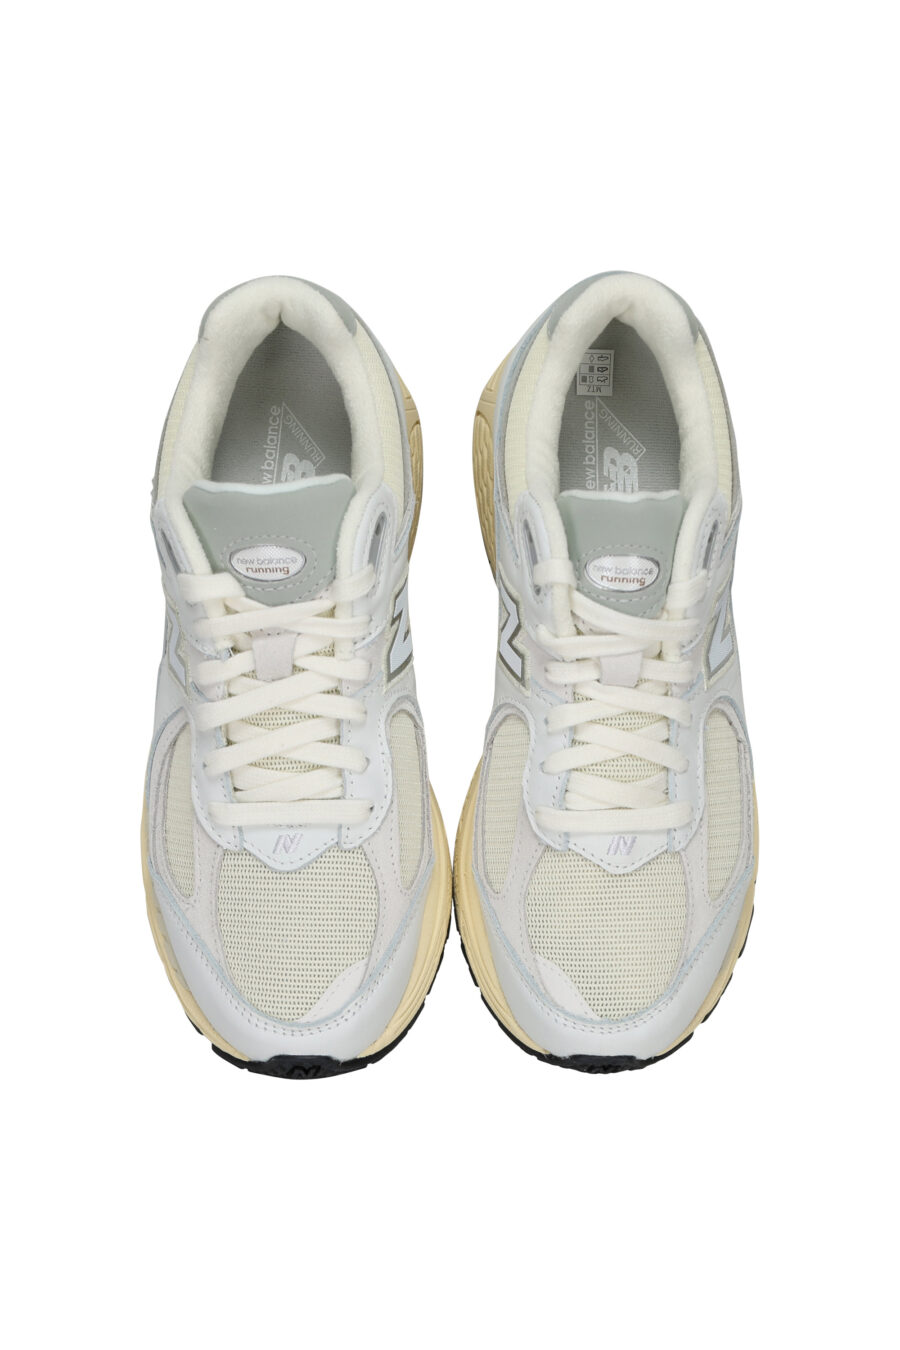 Zapatillas grises mix con blanco y suela beige "2002R" con logo "N" - 197375250014 4